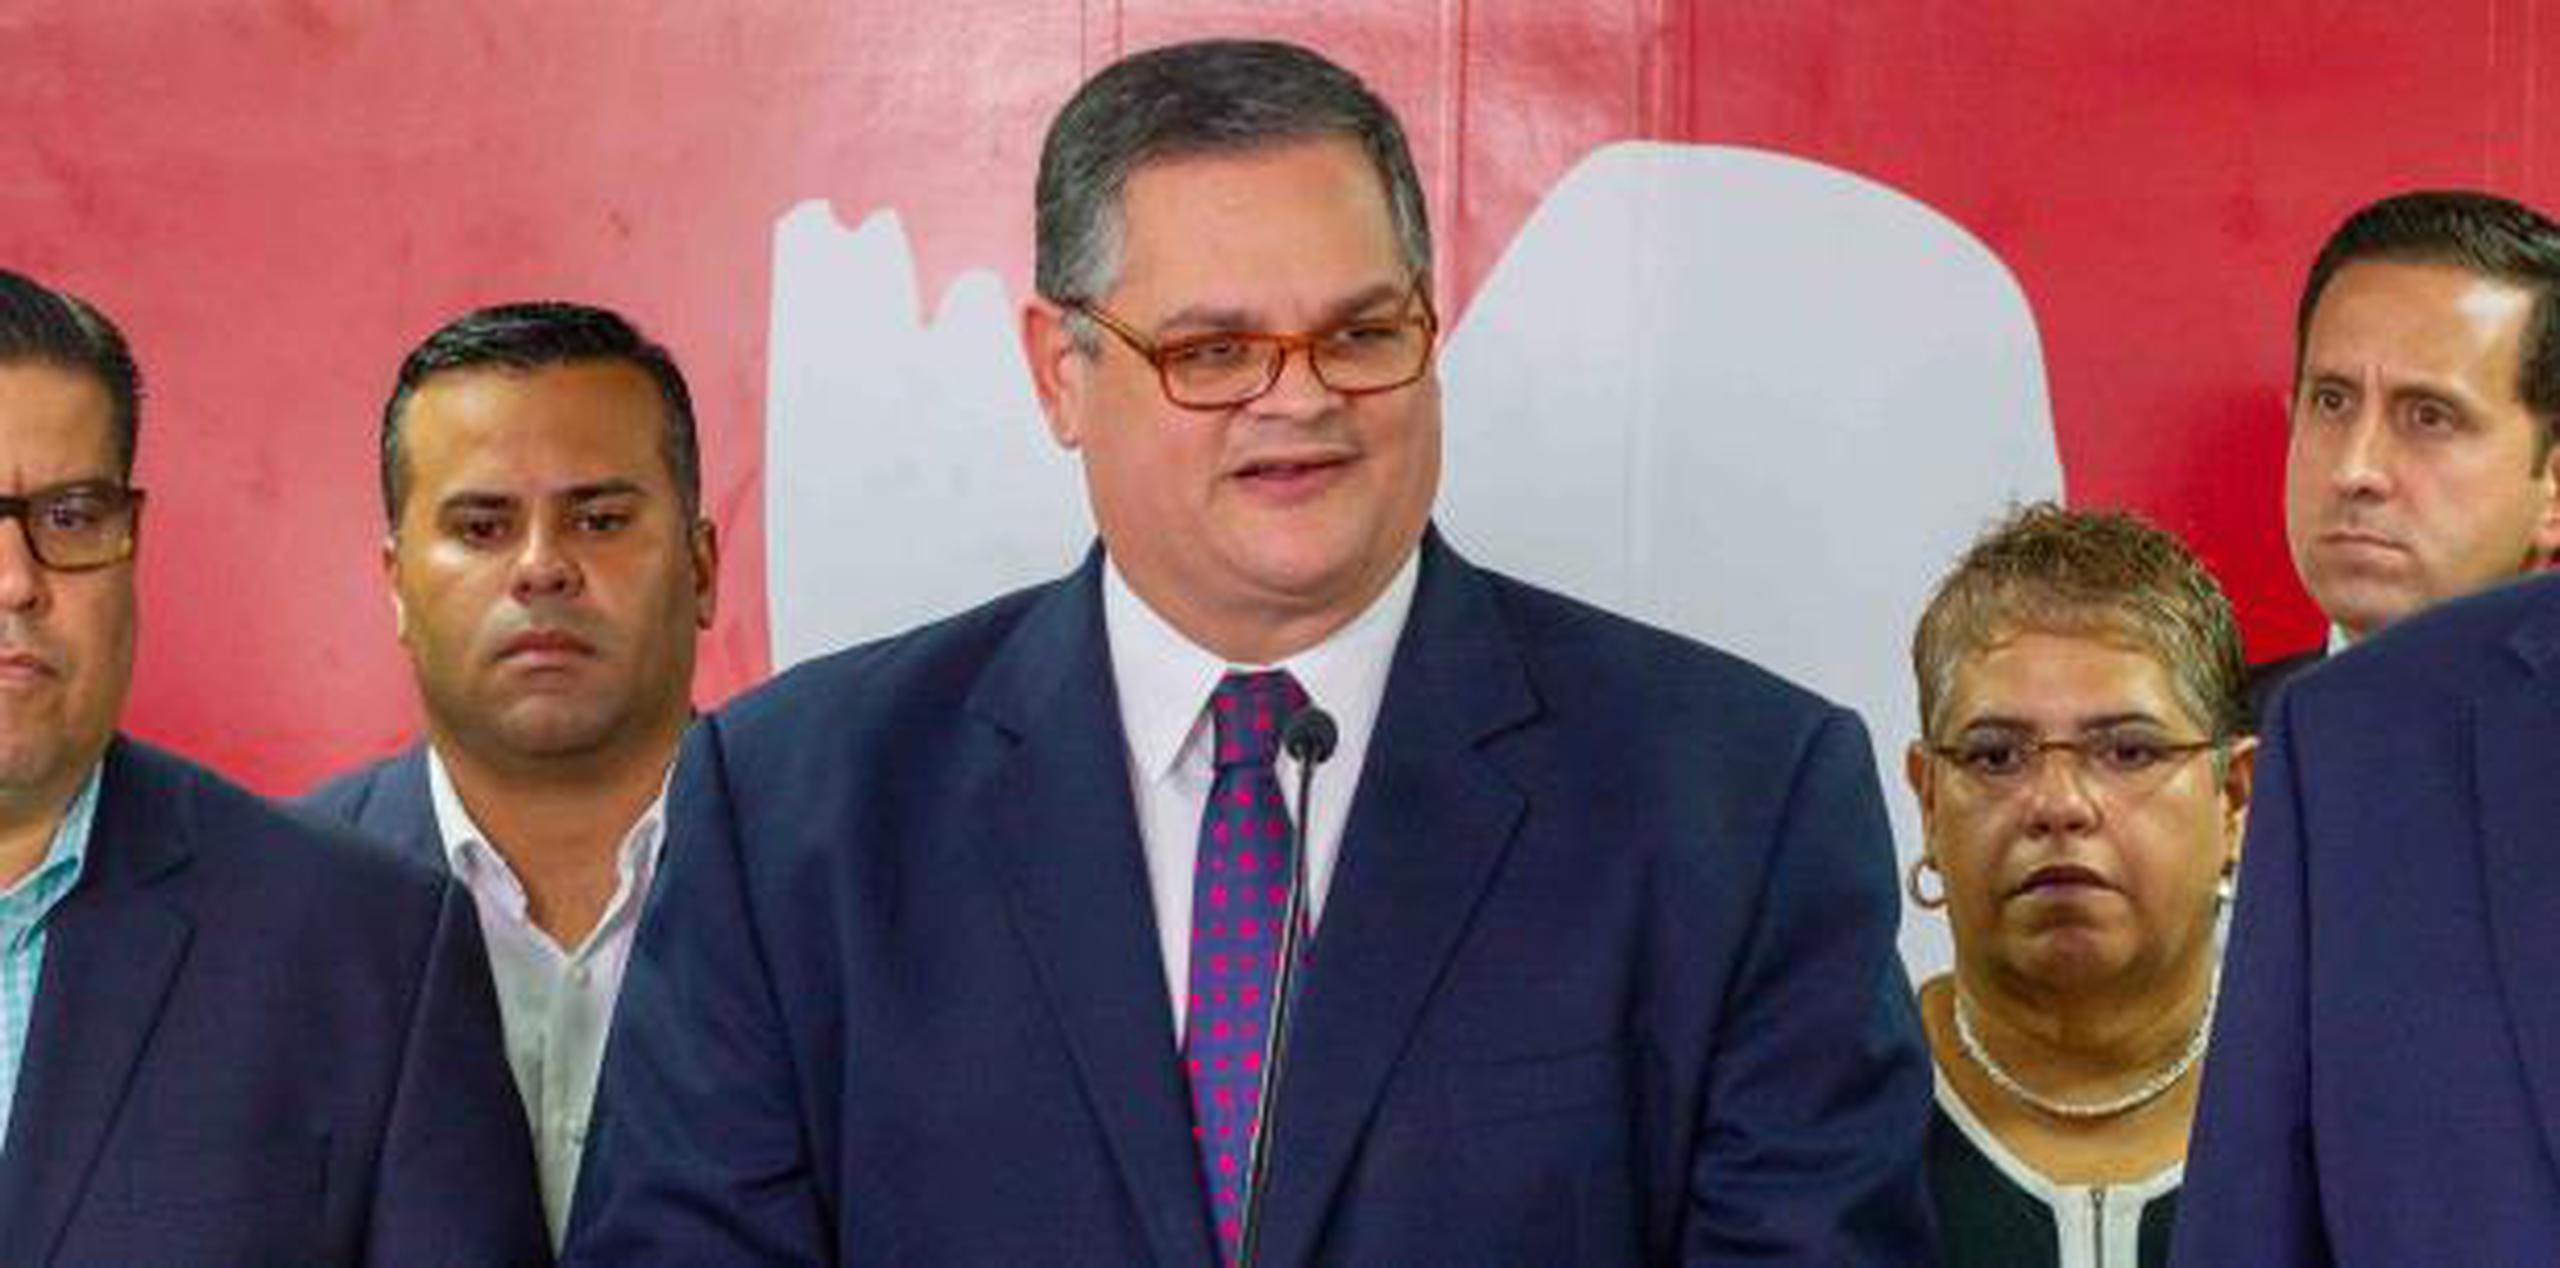 Aníbal José Torres, presidente del Partido Popular Democrático, afirmó que "creerle" a Ricardo Rosselló "es imposible". (Para Primera Hora / Ricardo Reyes)